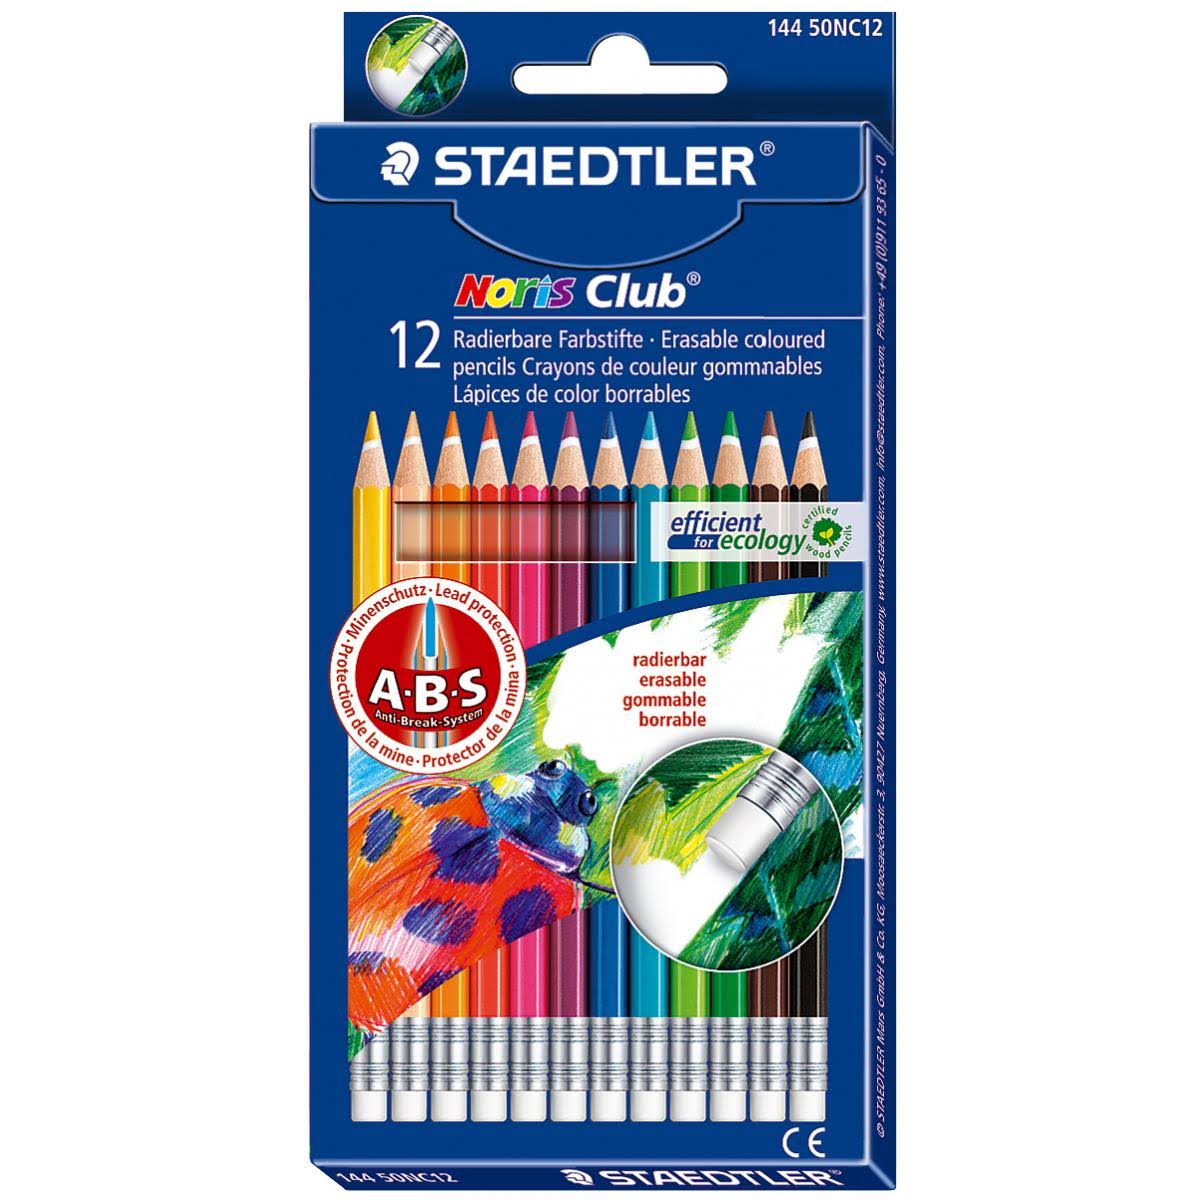 Staedtler Noris Club Erasable Colour Pencils - 12pk